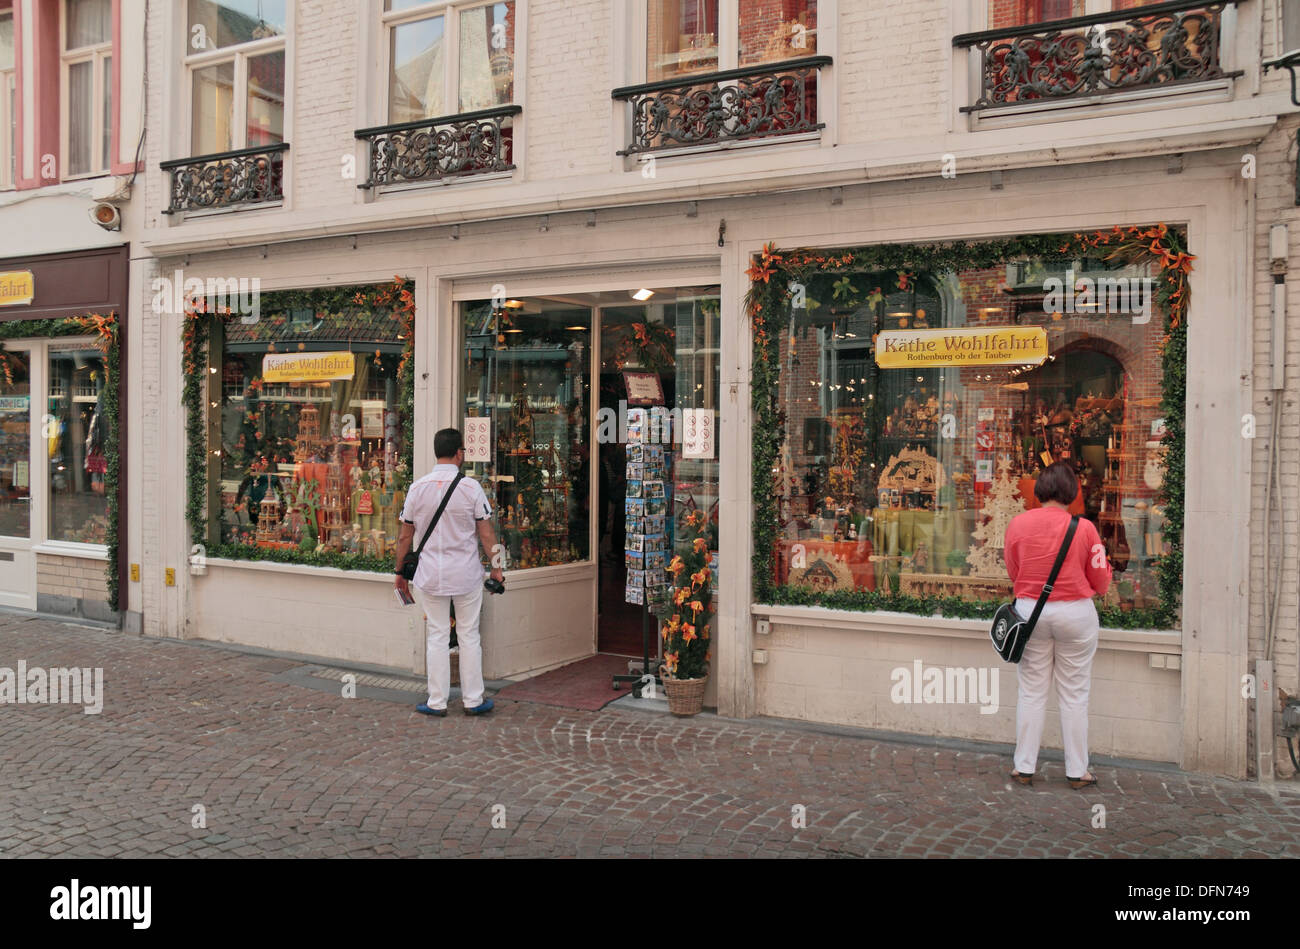 Kate G. Wohlfart, un tradizionale tedesco Ornamenti natale negozio nel centro storico di Bruges (Brugge), Fiandre Occidentali, Belgio. Foto Stock